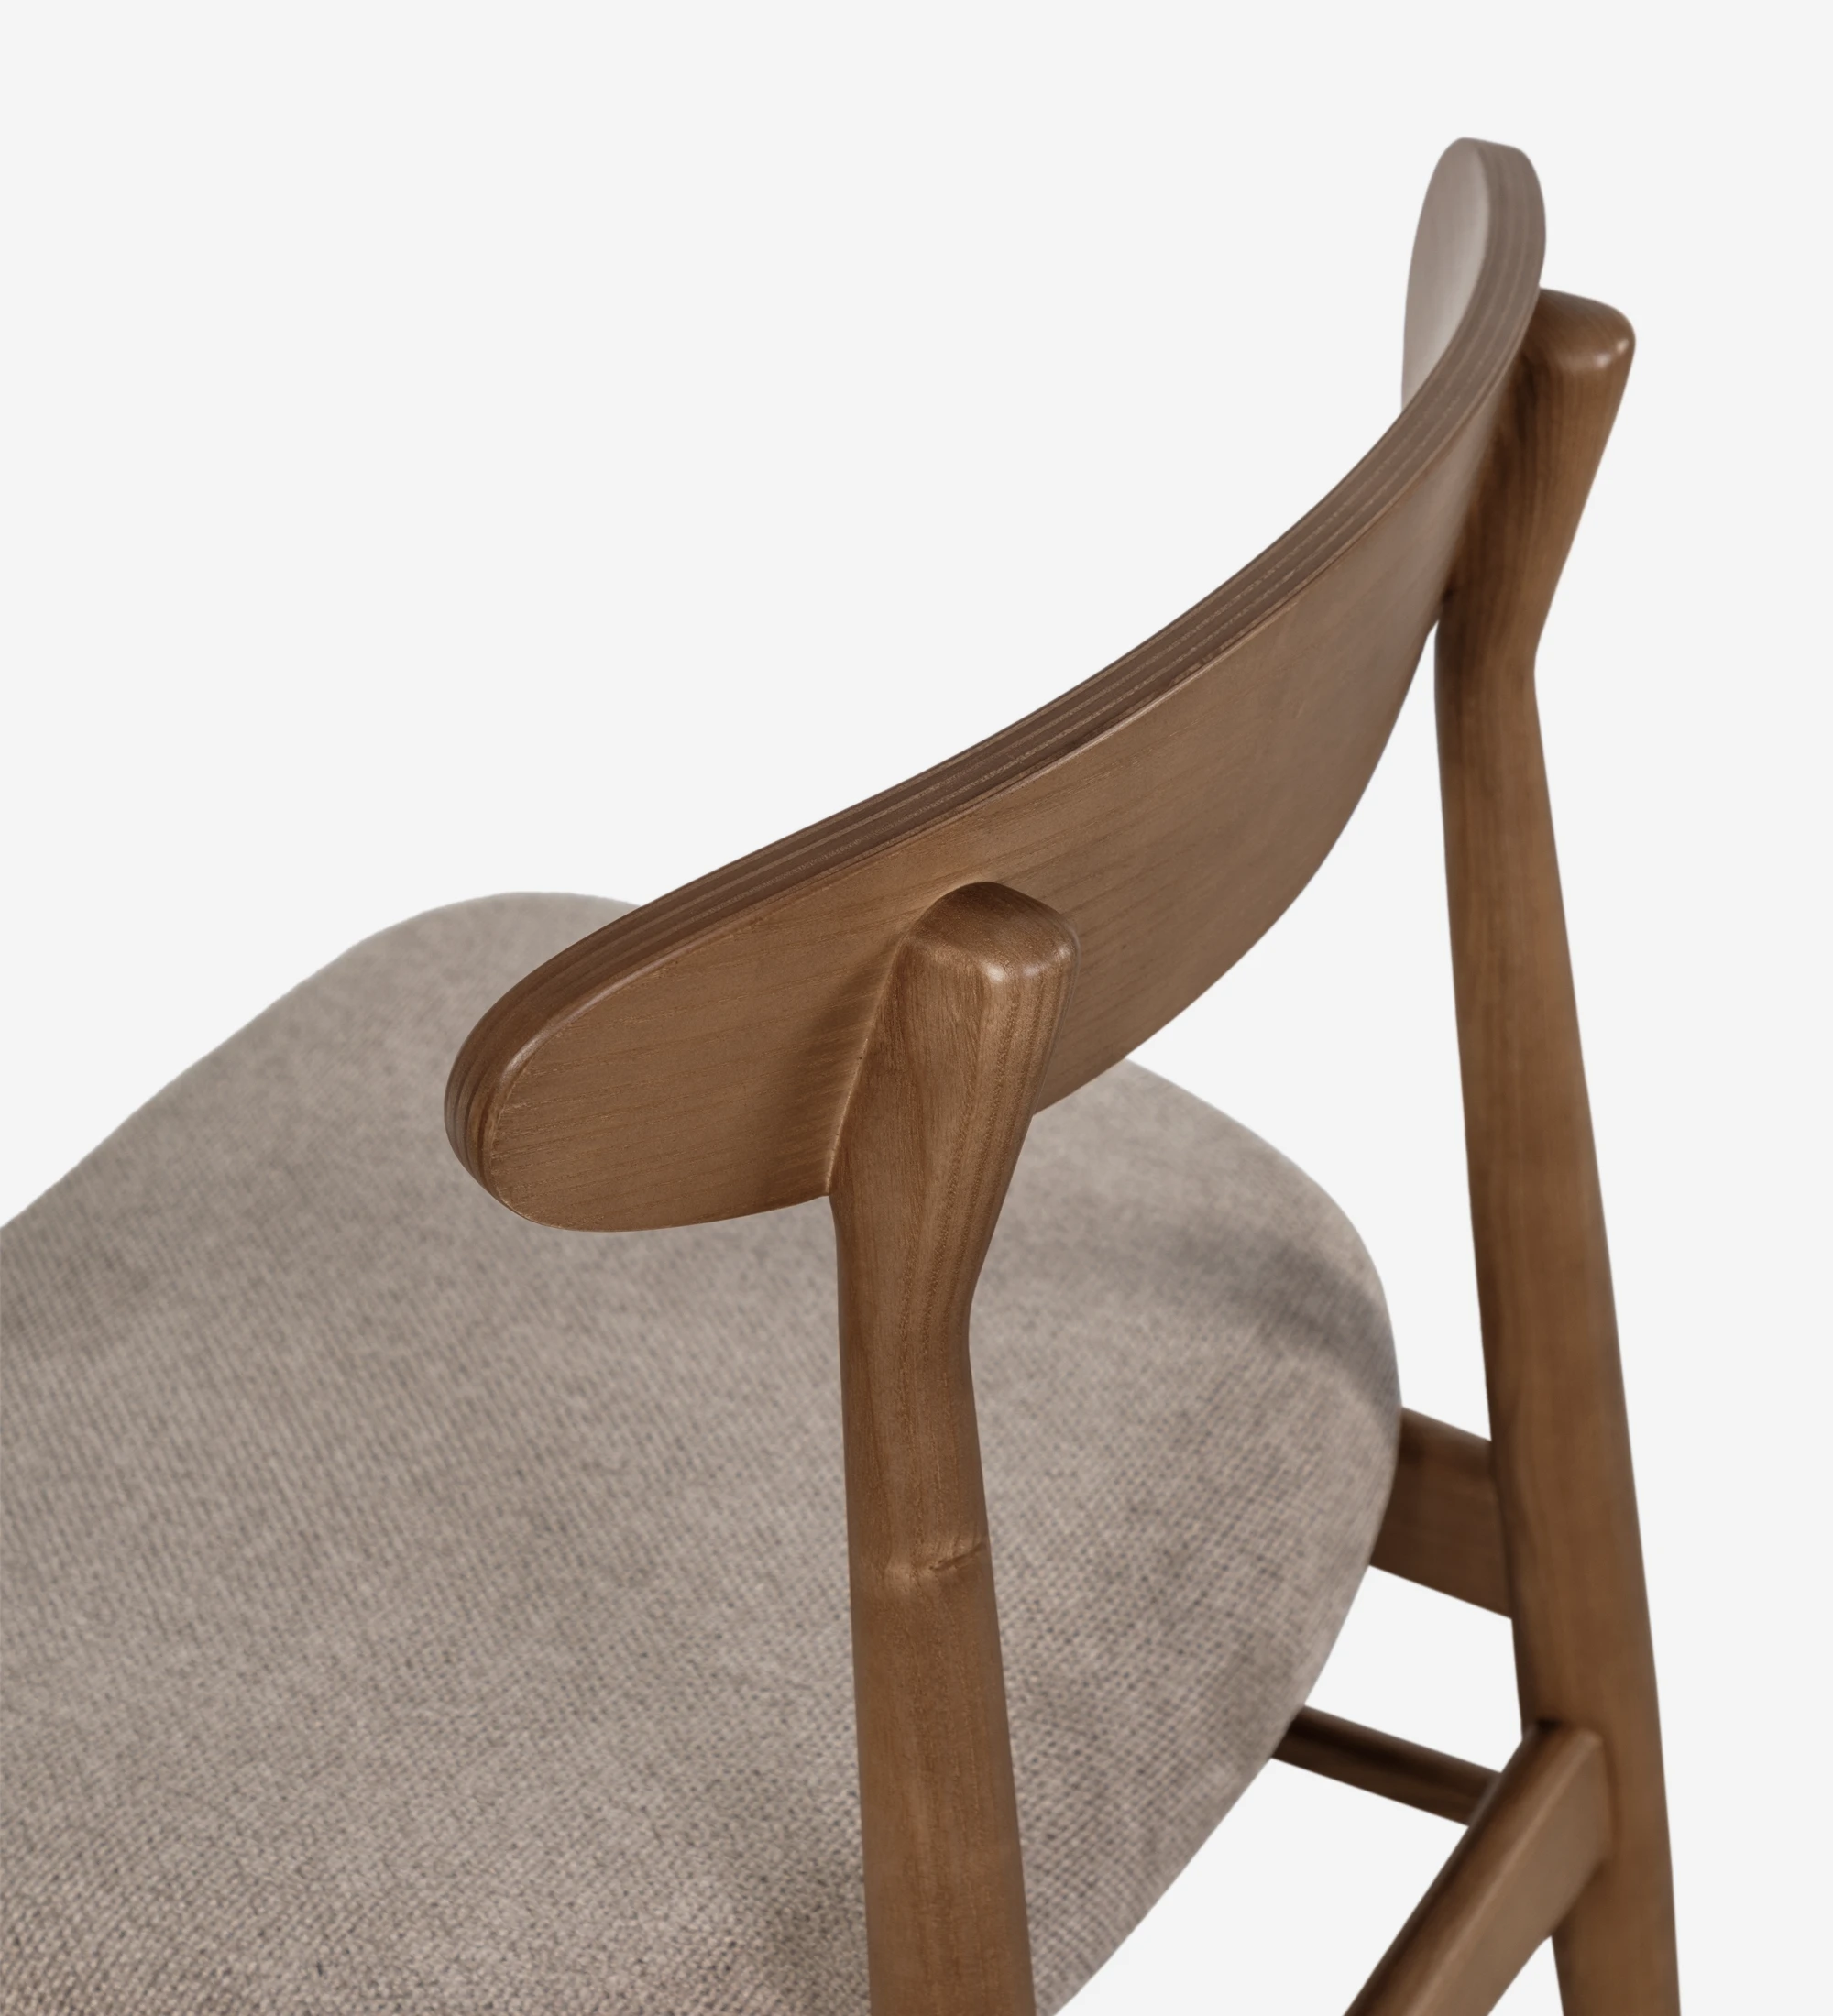 Chaise avec structure en bois de noyer et assise rembourrée en tissu.